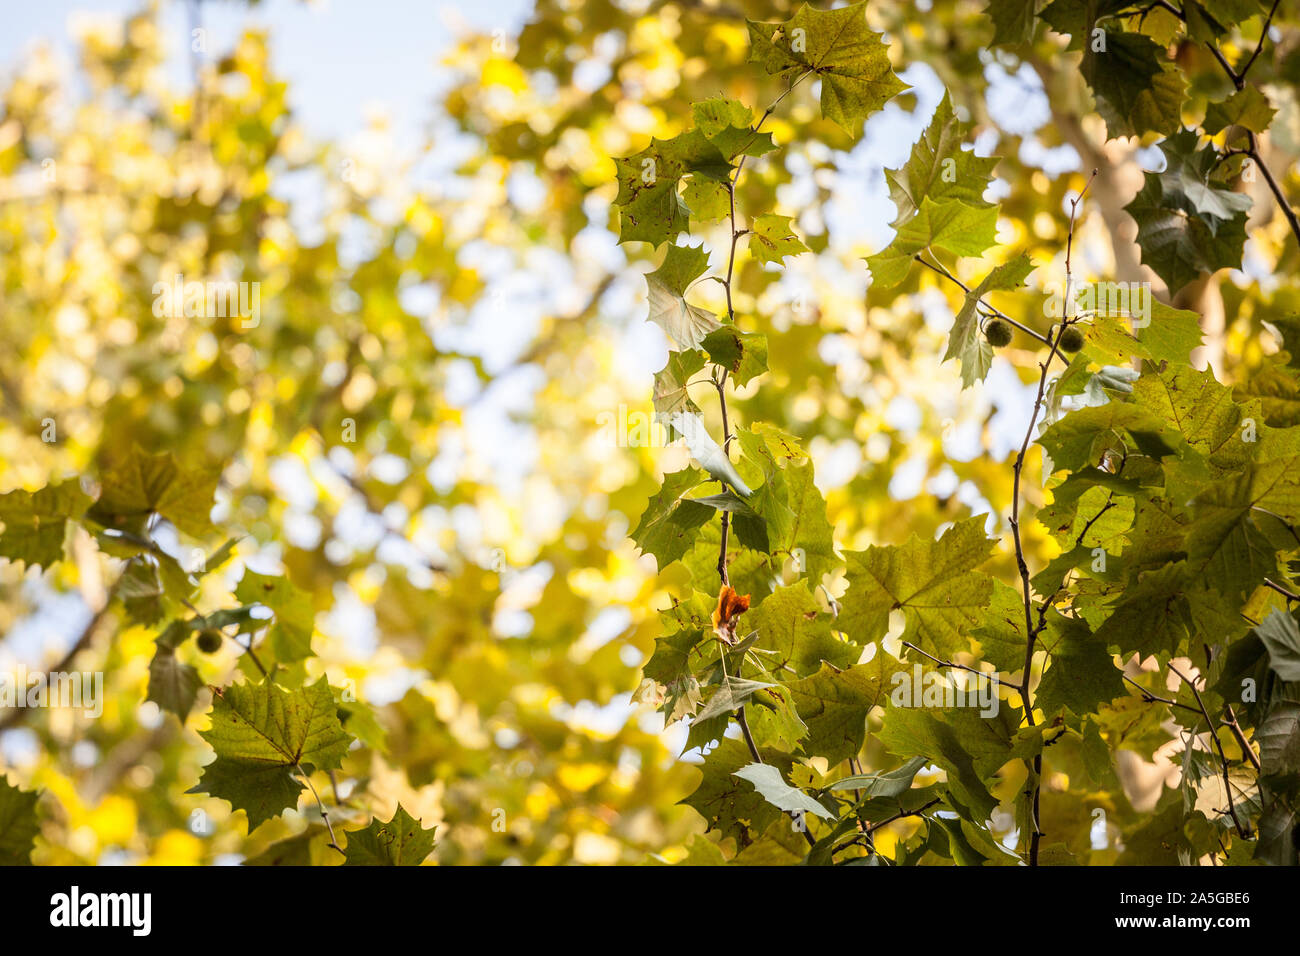 Cerrar en un árbol de avión con sus hojas amarillas y verdes, en otoño. También conocido como sicomoro, o platanus, el árbol es un símbolo de la caída en el norte de él Foto de stock